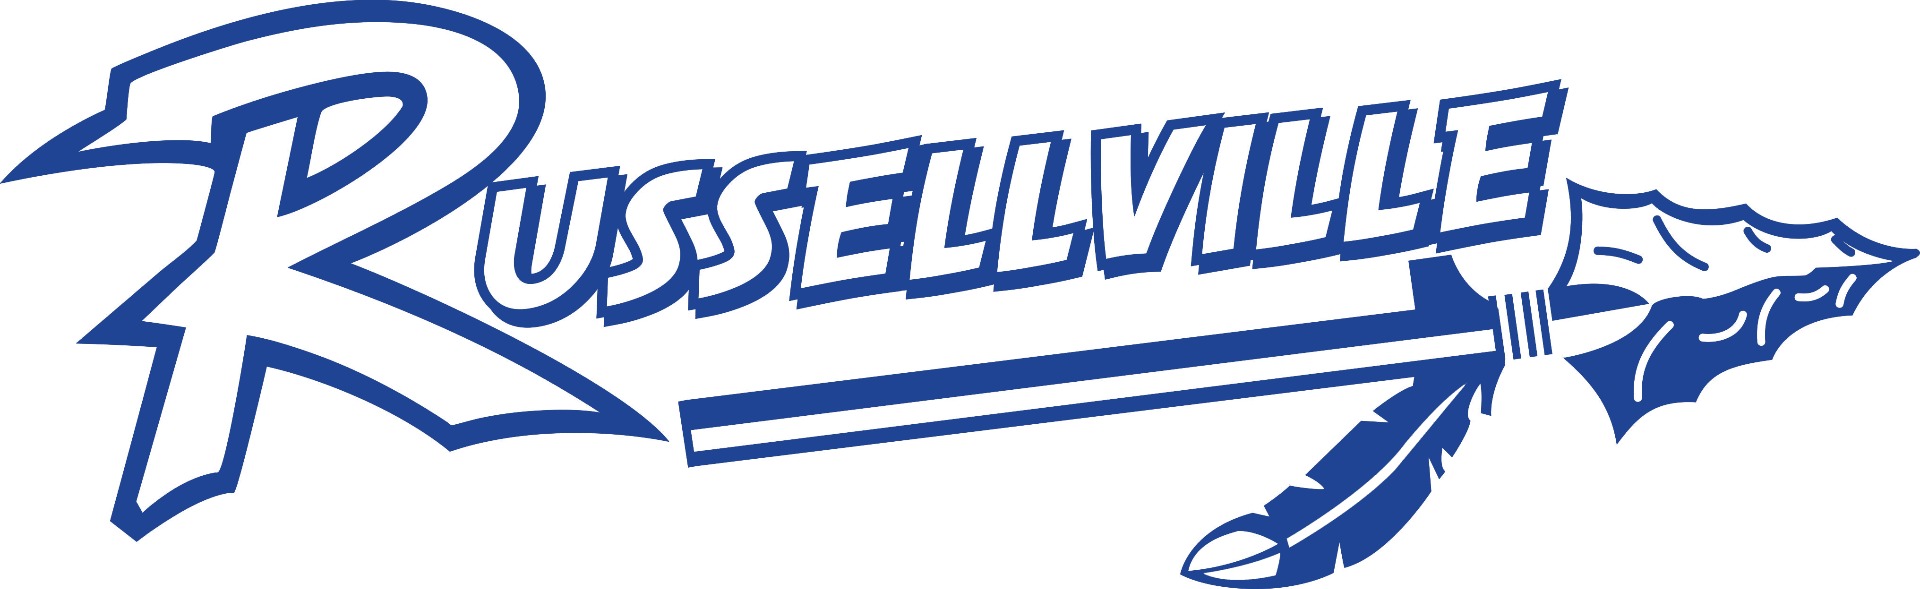 Russellville Logo